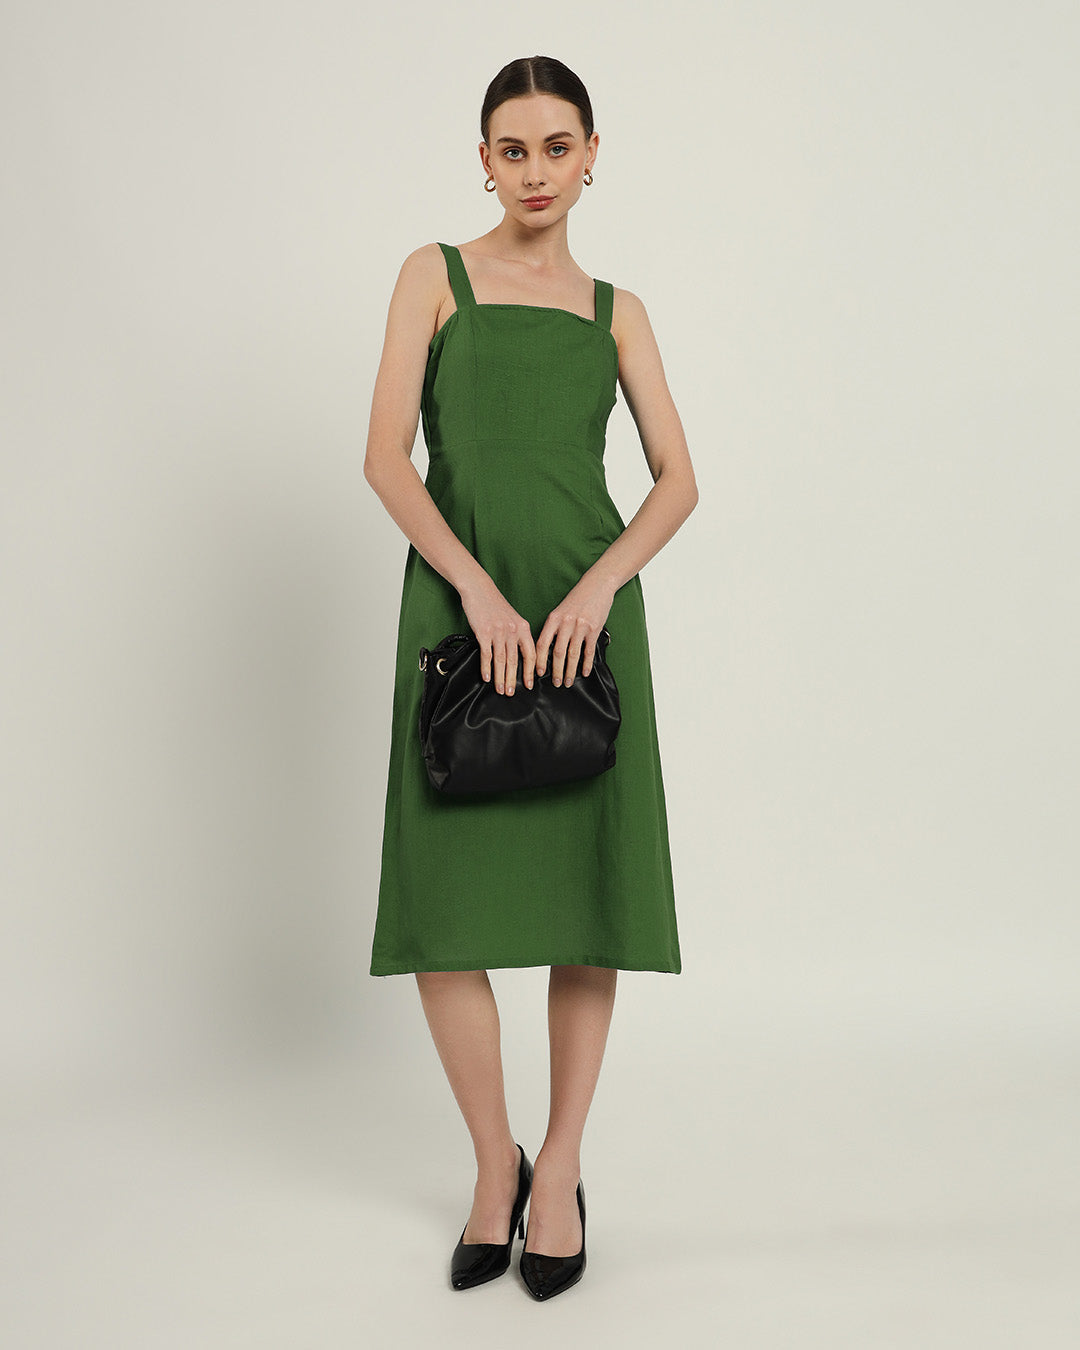 The Samara Emerald Dress